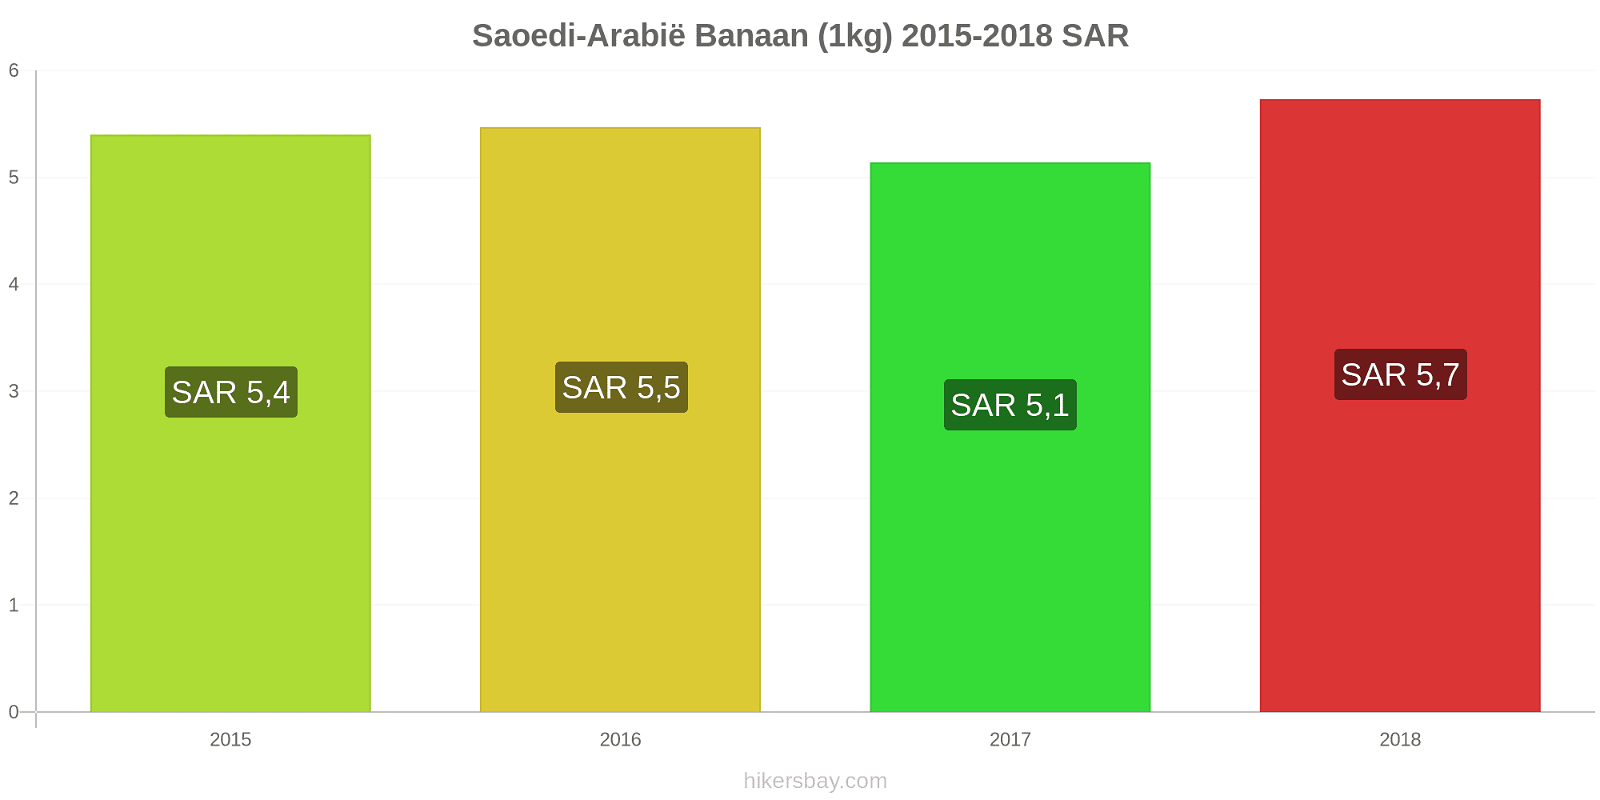 Saoedi-Arabië prijswijzigingen Bananen (1kg) hikersbay.com